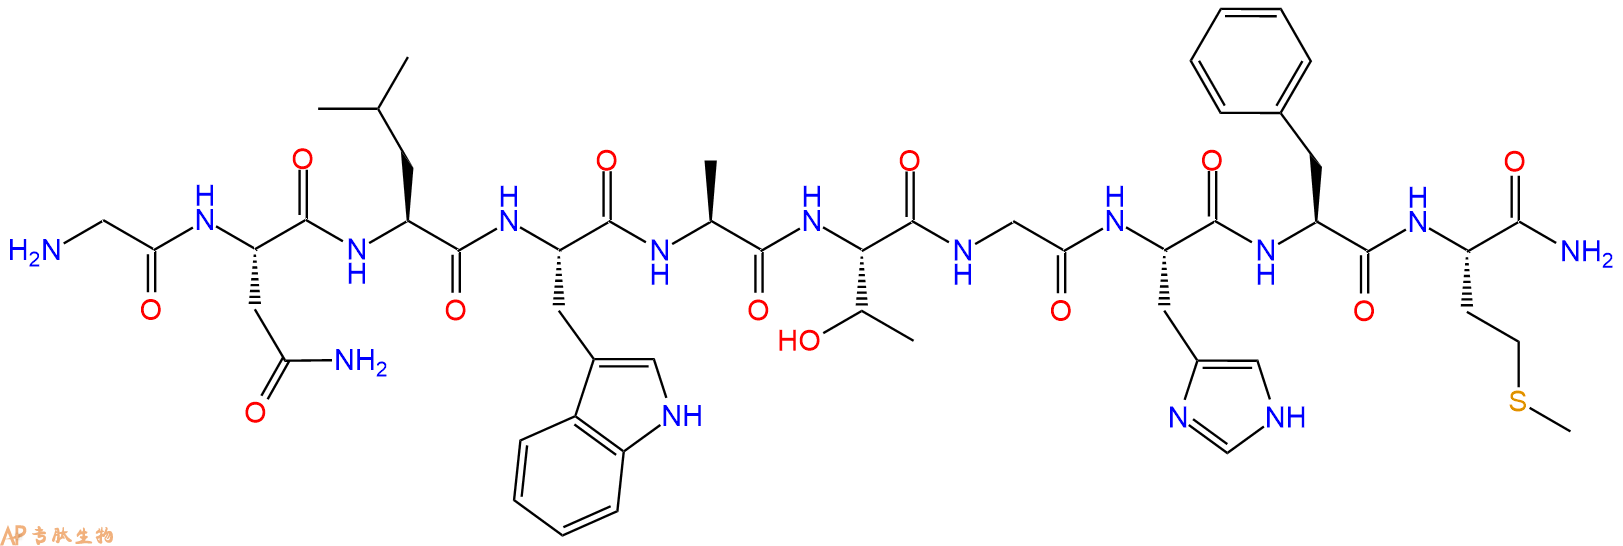 专肽生物产品神经介素 B、Neuromedin B87096-84-2